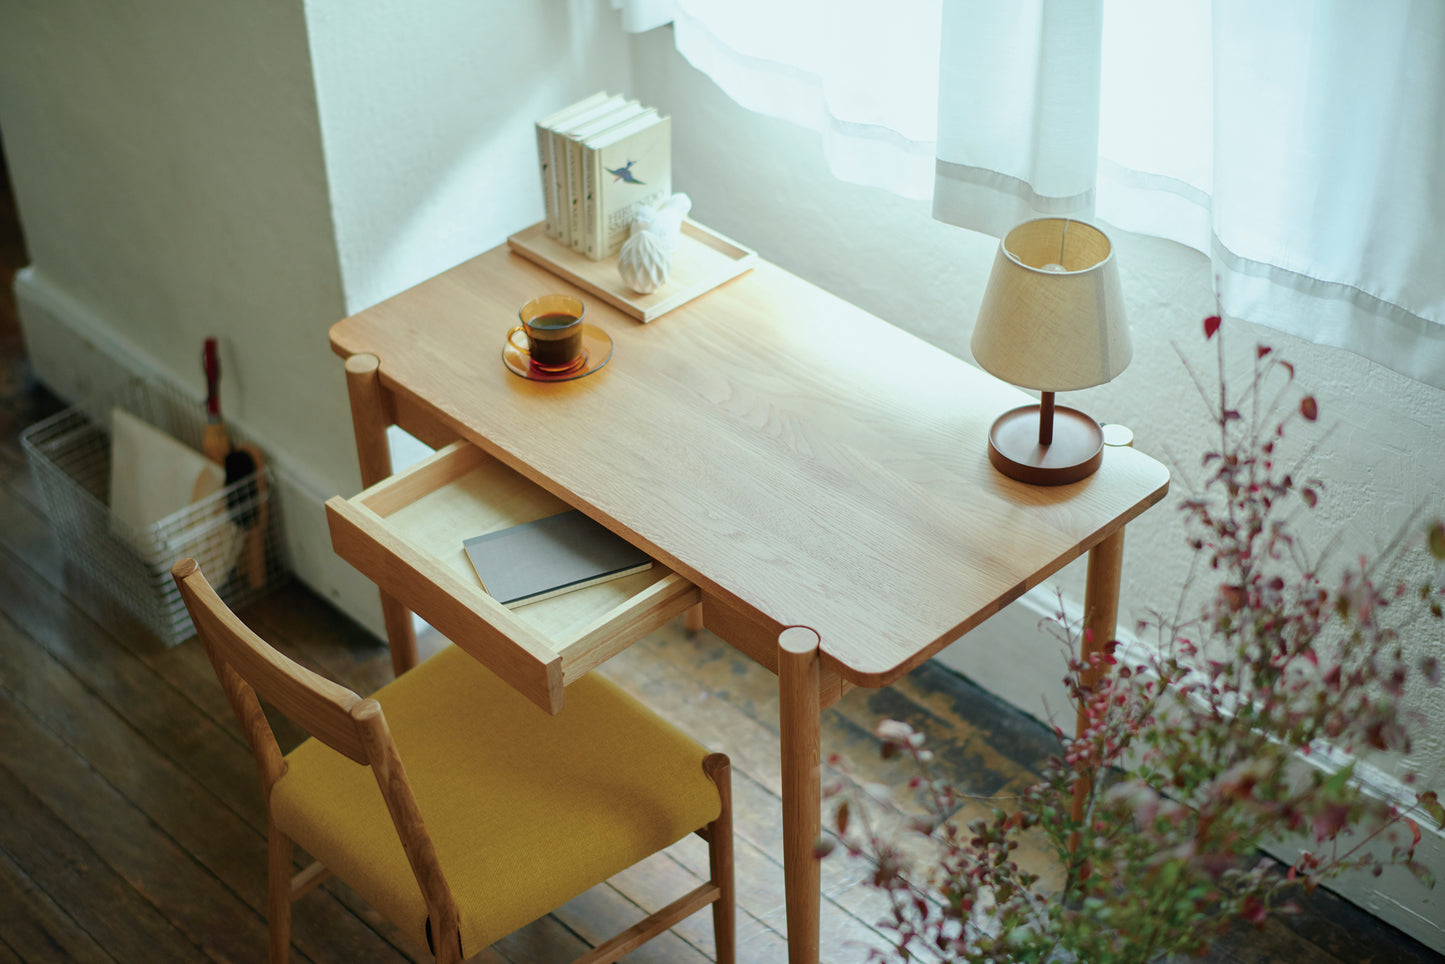 【SIEVE】dent dining table Lsize/デントダイニングテーブル Lサイズ